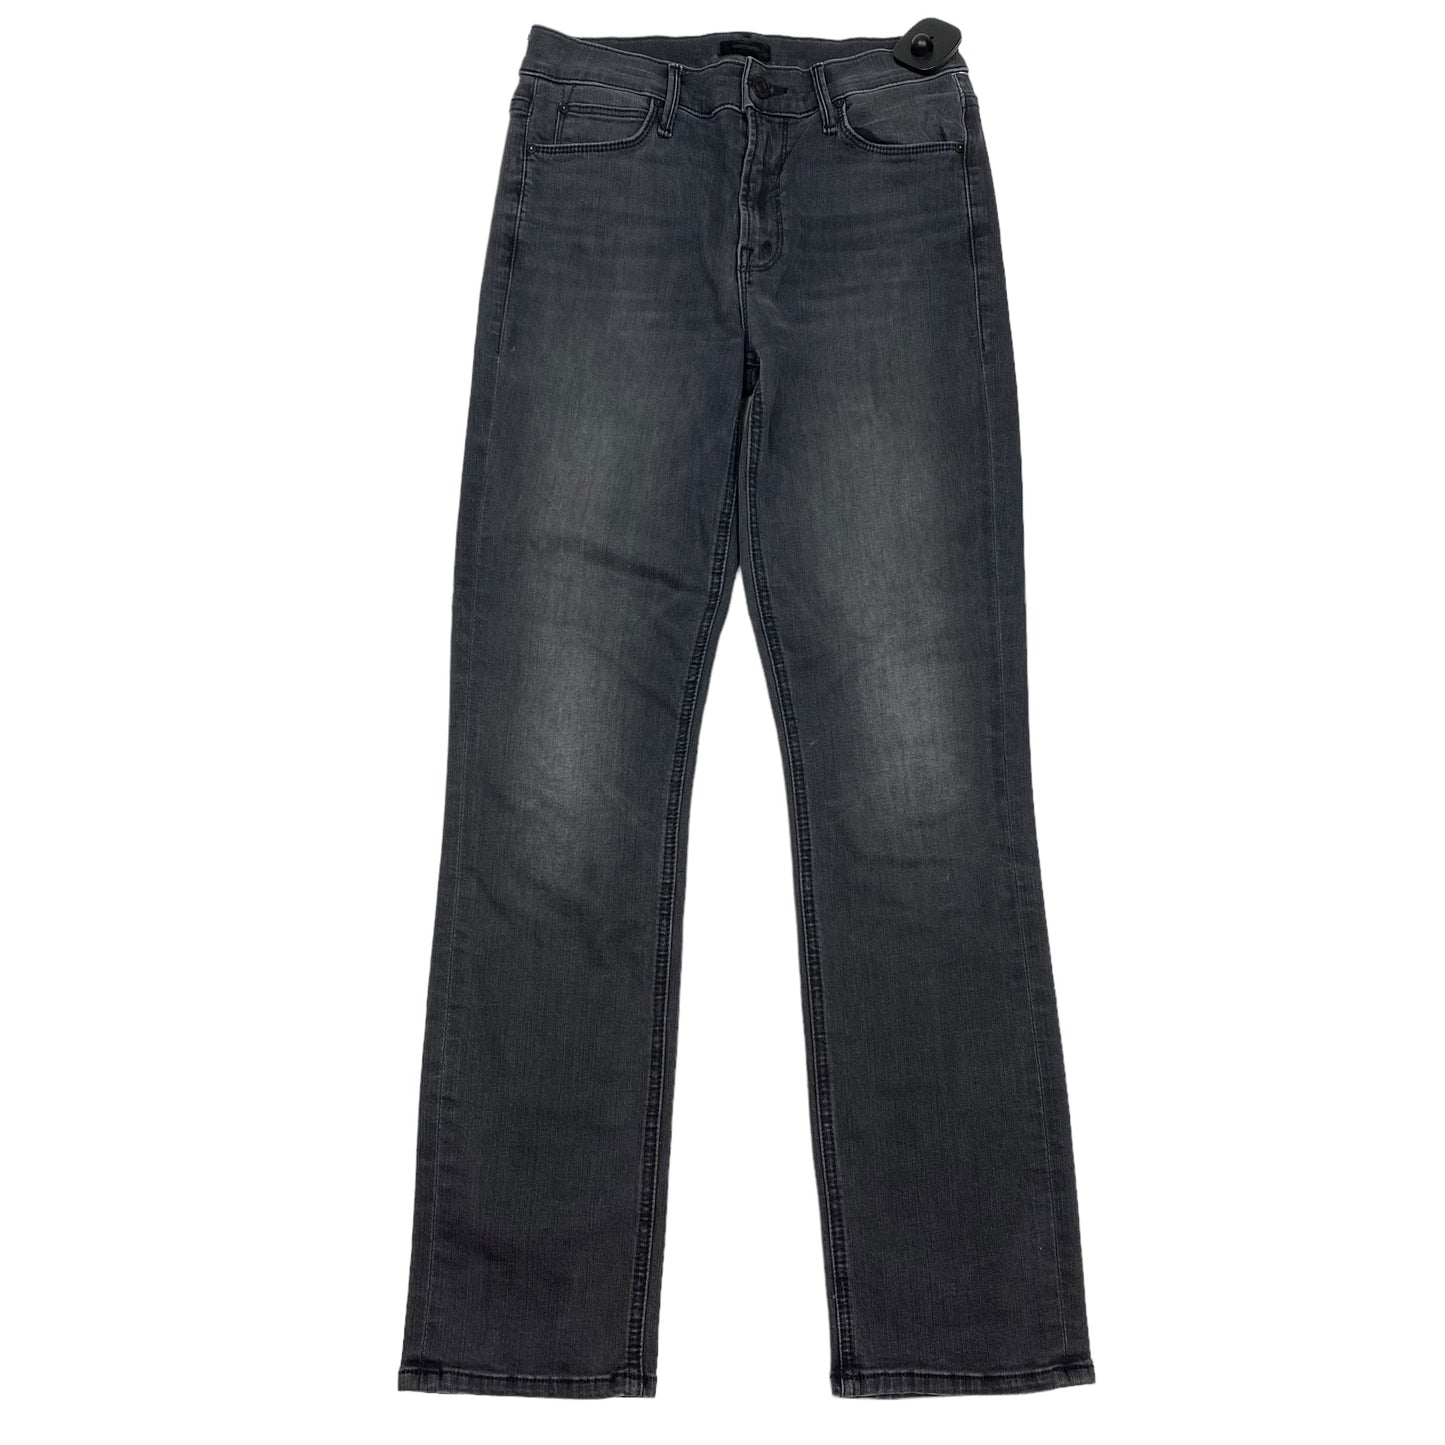 Grey Denim Jeans Designer Mother Jeans, Size 2